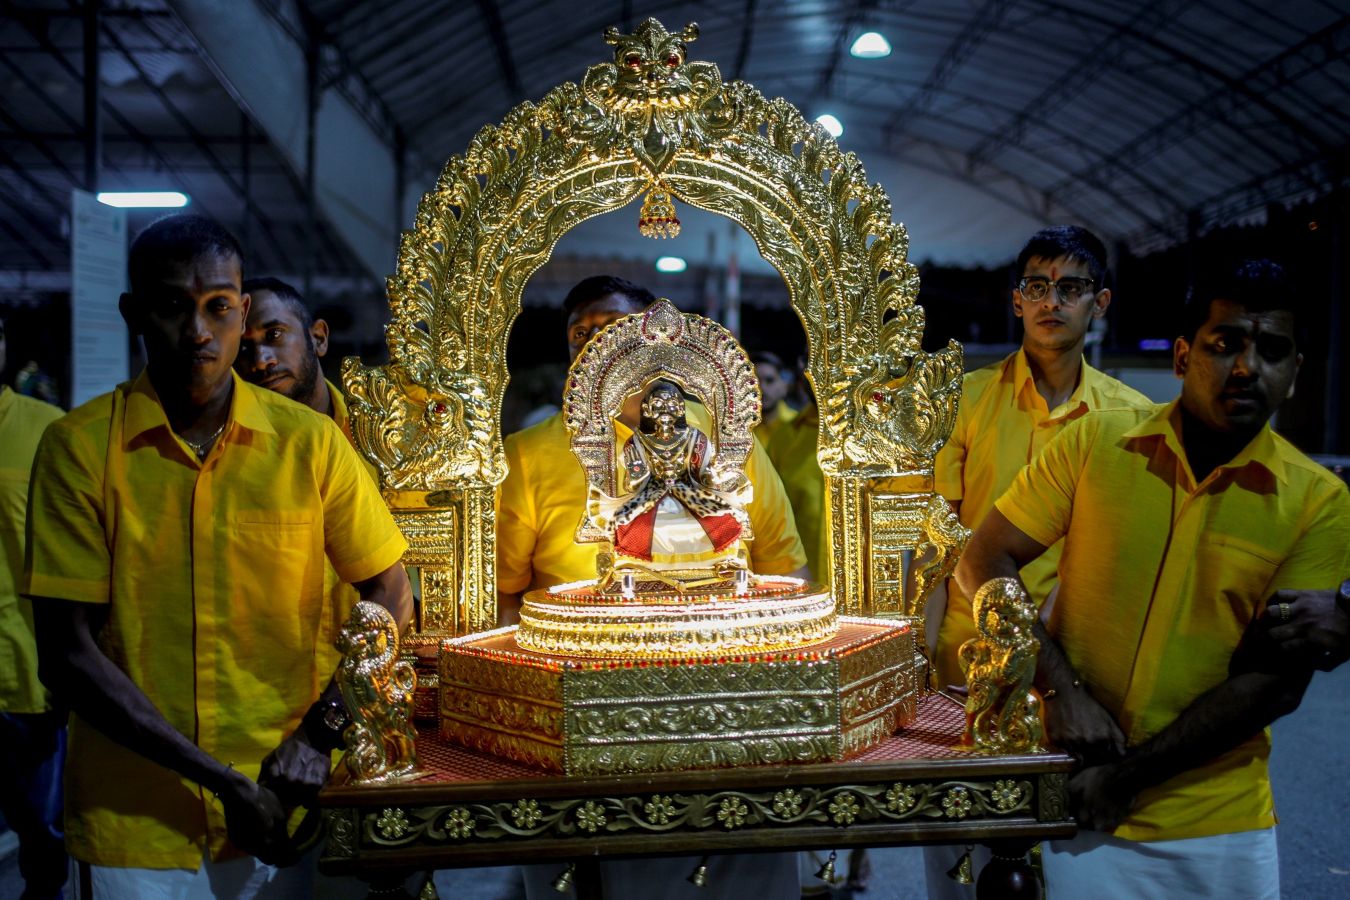 Cientos de fieles celebran el festival Thaipusam en varios puntos de India y Singapur. Se atraviesan el cuerpo con agujas y cuelgan de ahí sus ofrendas, normalmente furtas o recipientes de leche